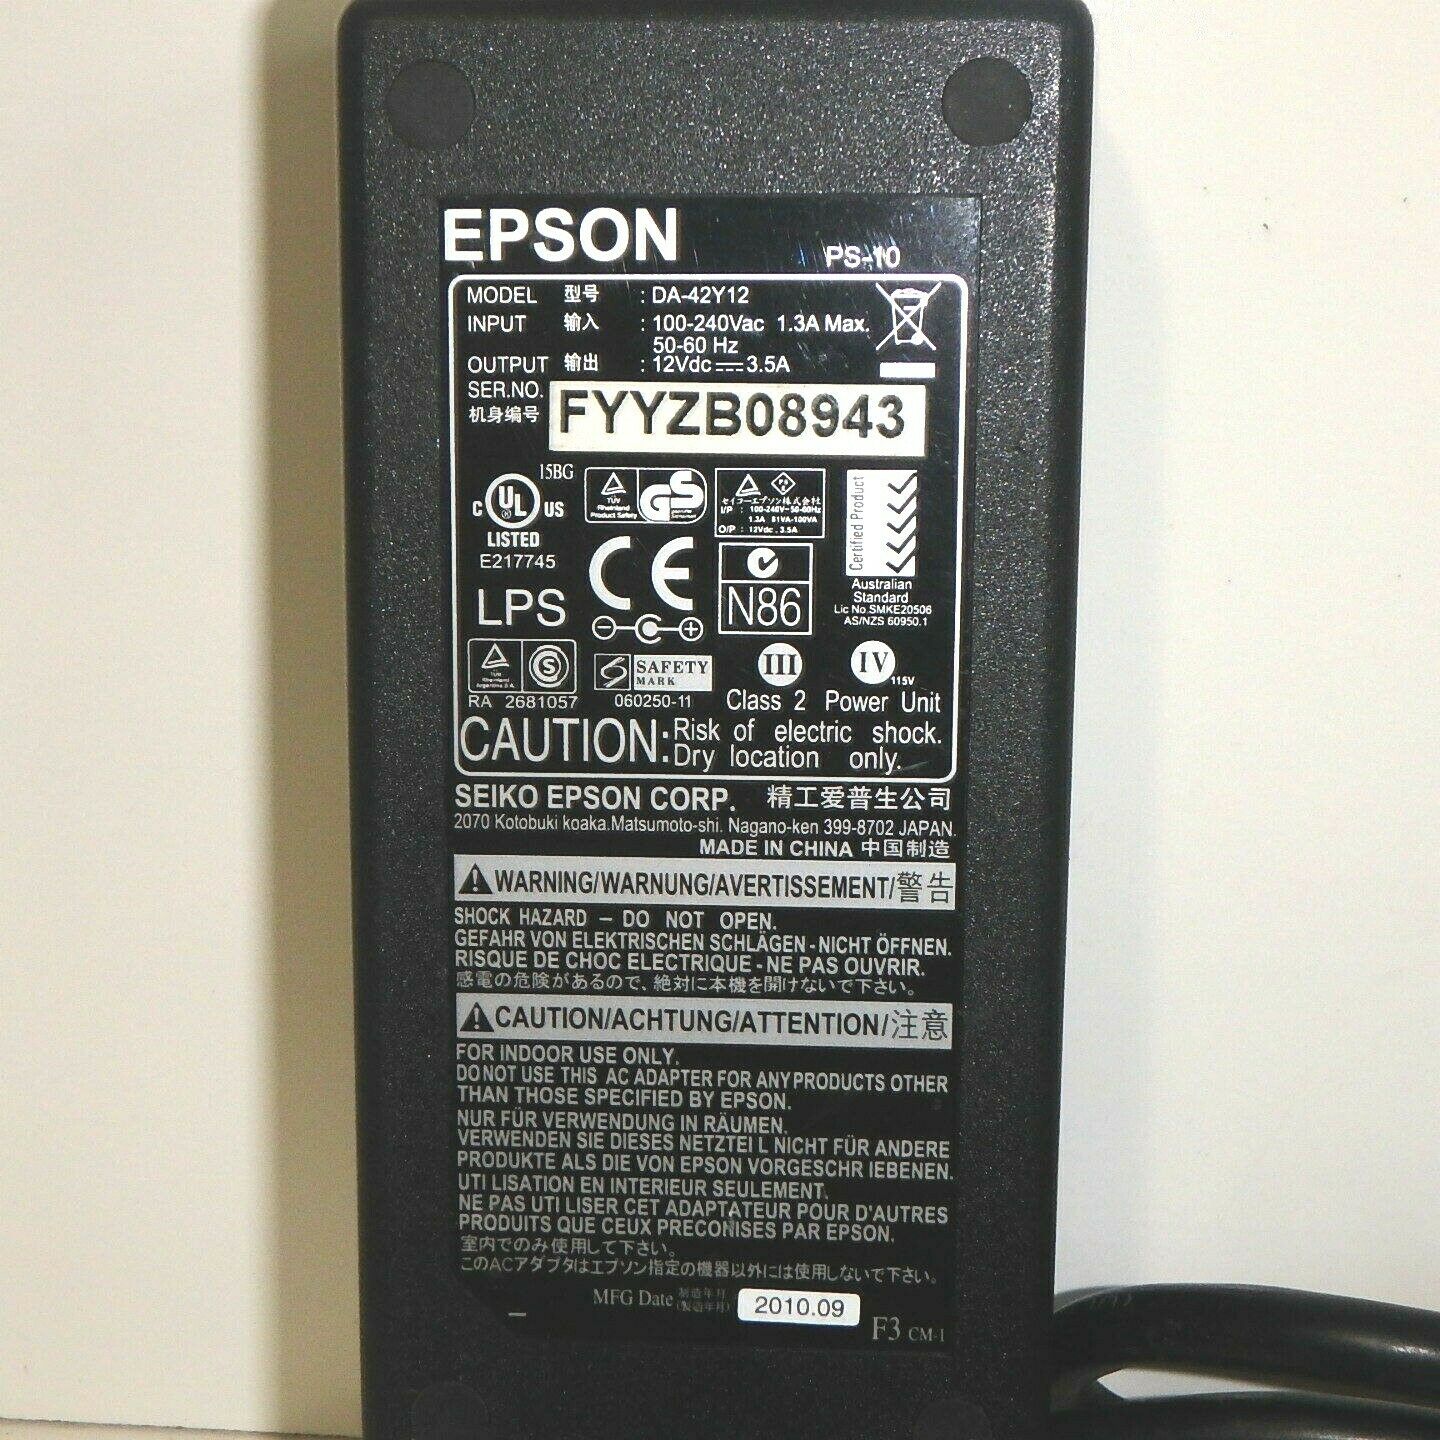 EPSON 12VDC 3.5A POWER SUPPLY, #DA-42Y12 MPN: DA-42Y12 Brand: EPSON Output Voltage: 12V EPSON 12VDC 3.5A POWER SUP